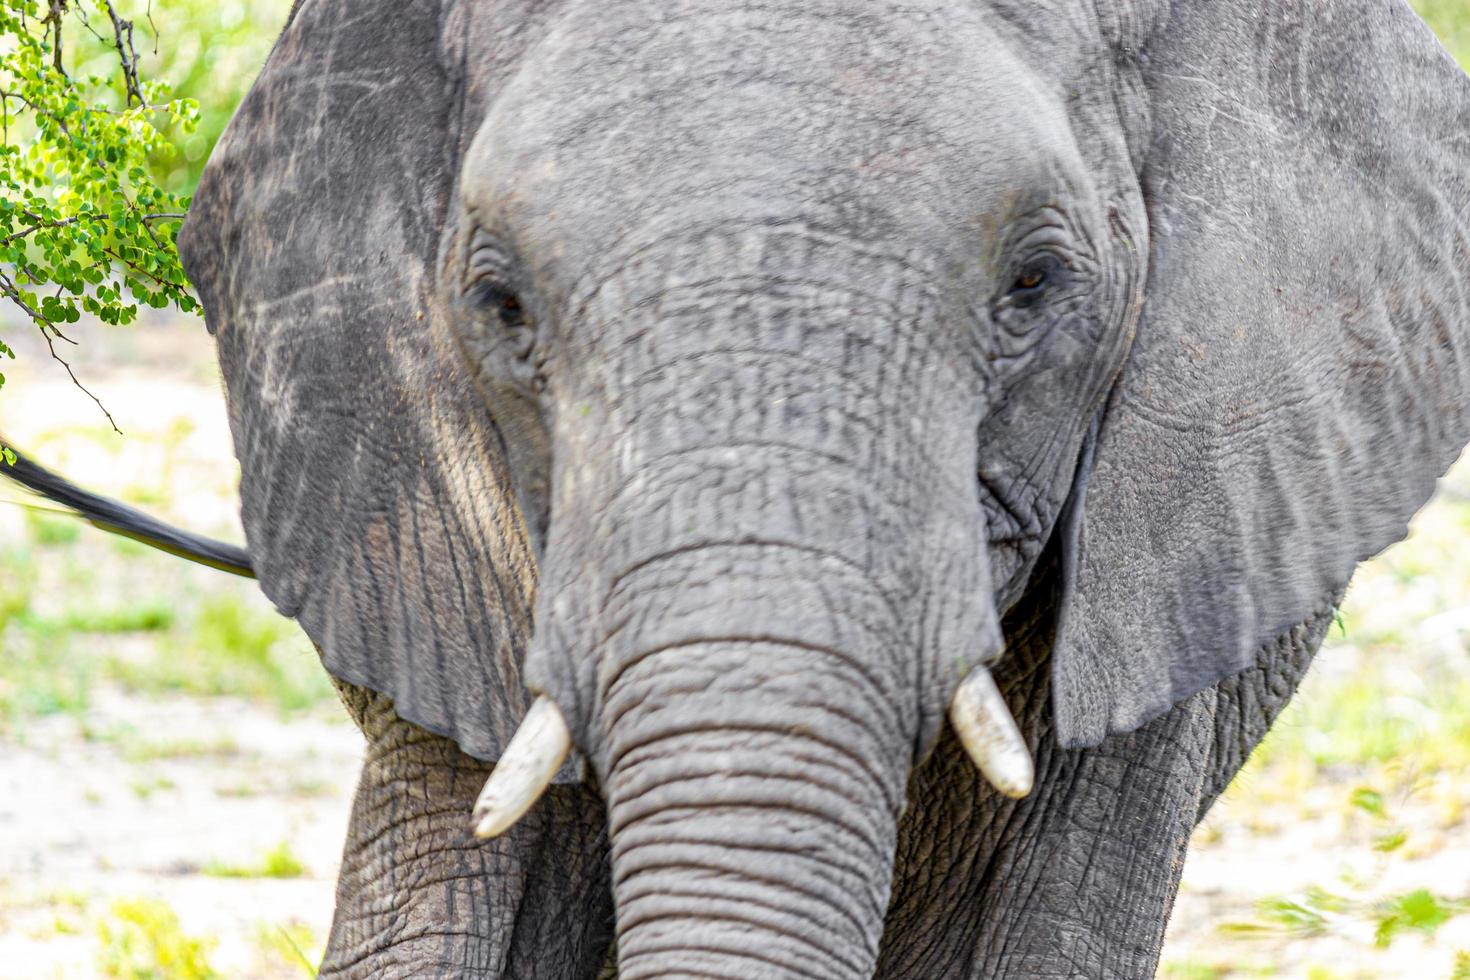 cinco grandes elefantes africanos safari en el parque nacional kruger en sudáfrica. foto